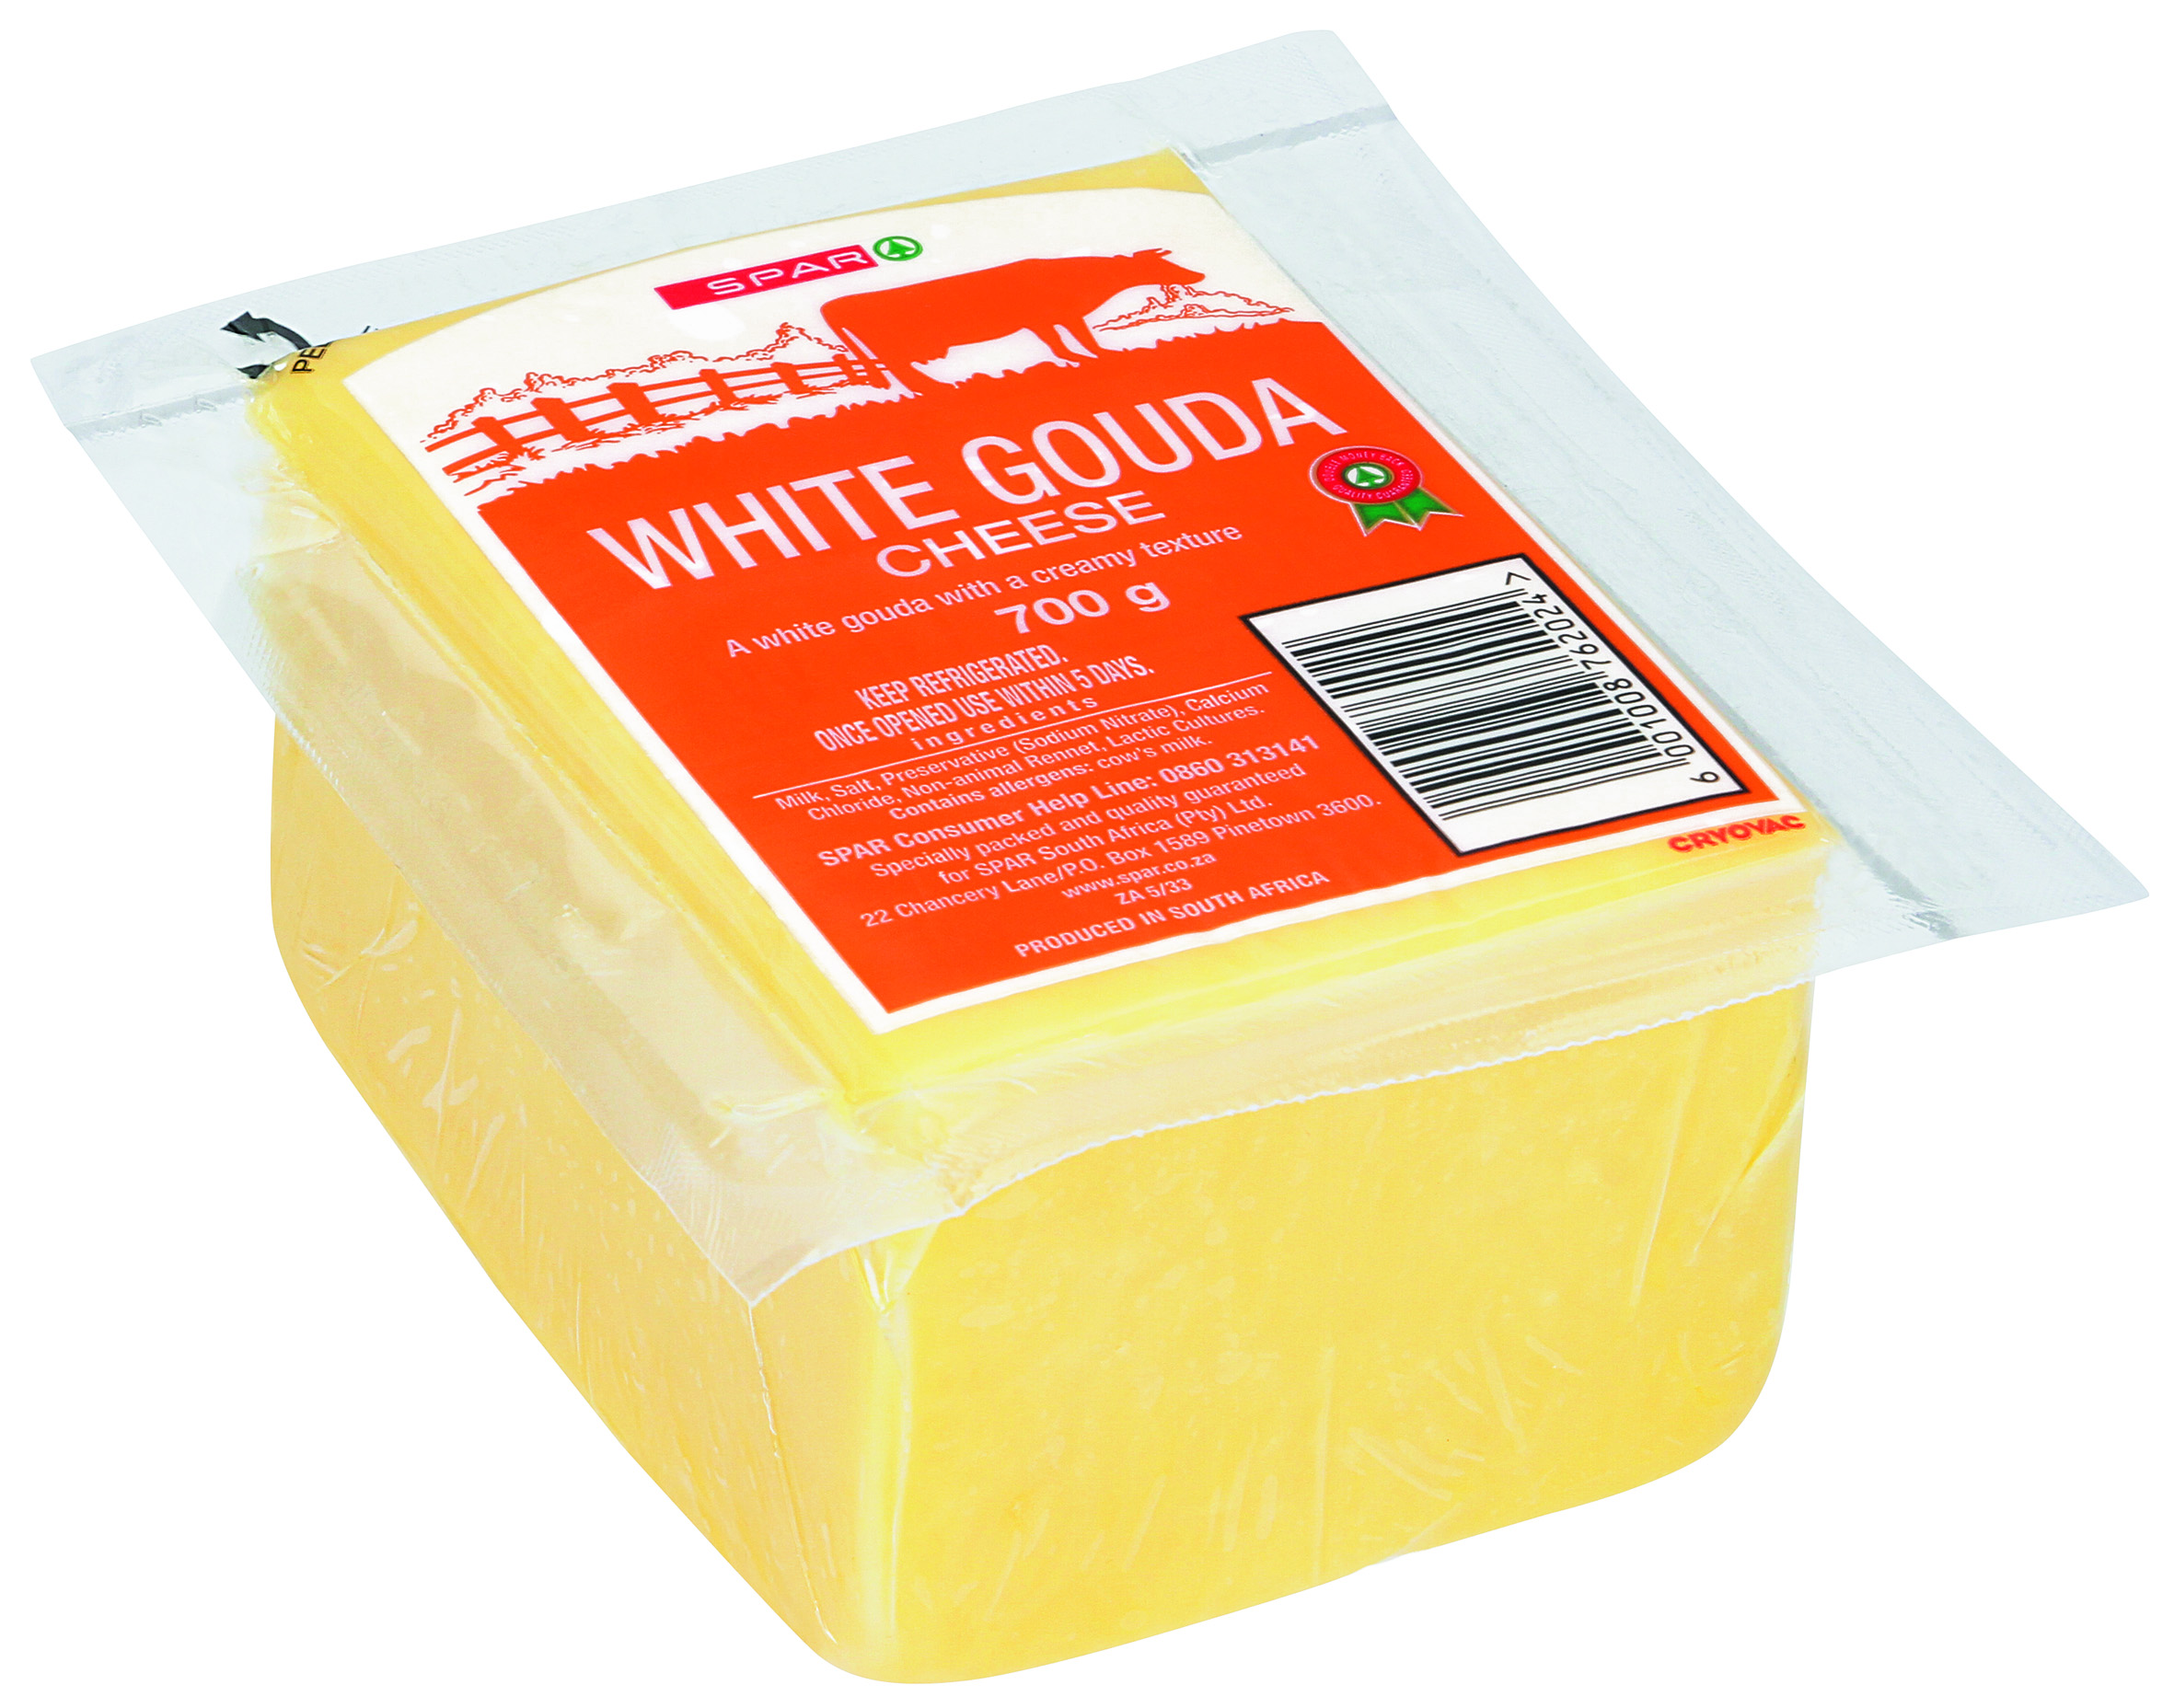 vacuum packed white gouda cheese